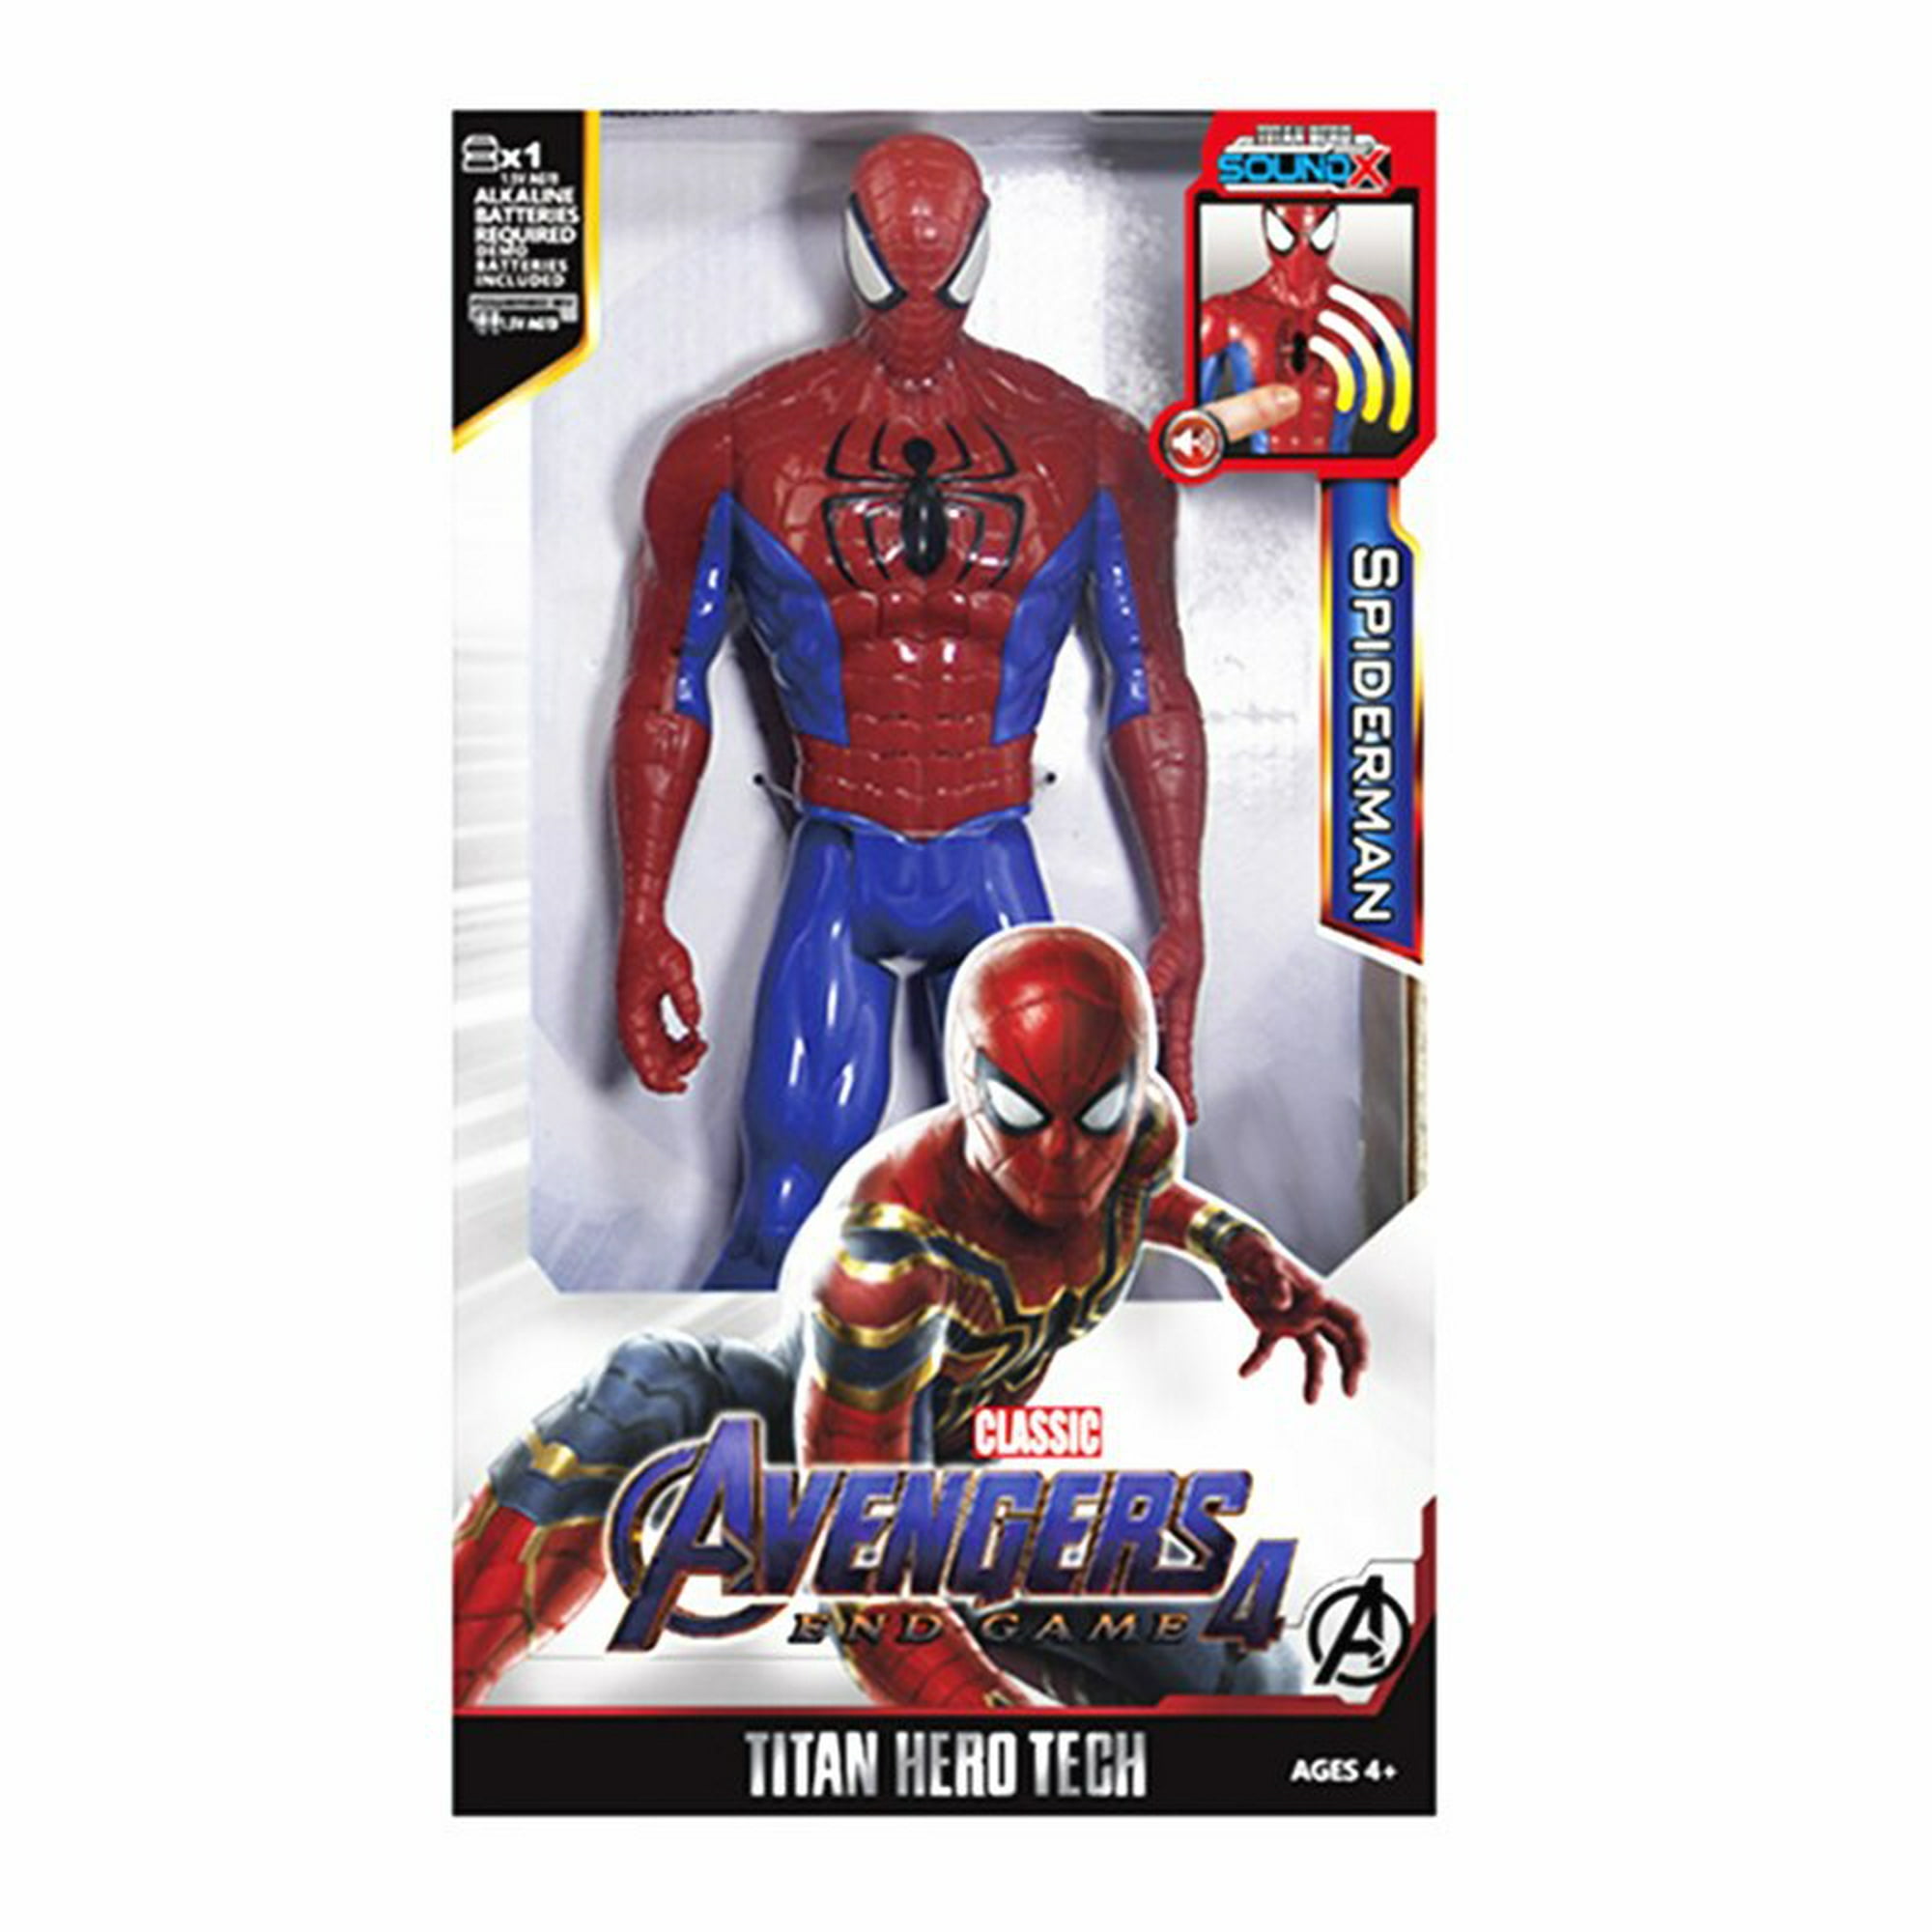 Muñeco Spiderman Articulado Avengers Con Luz Y Sonido 30 Cm